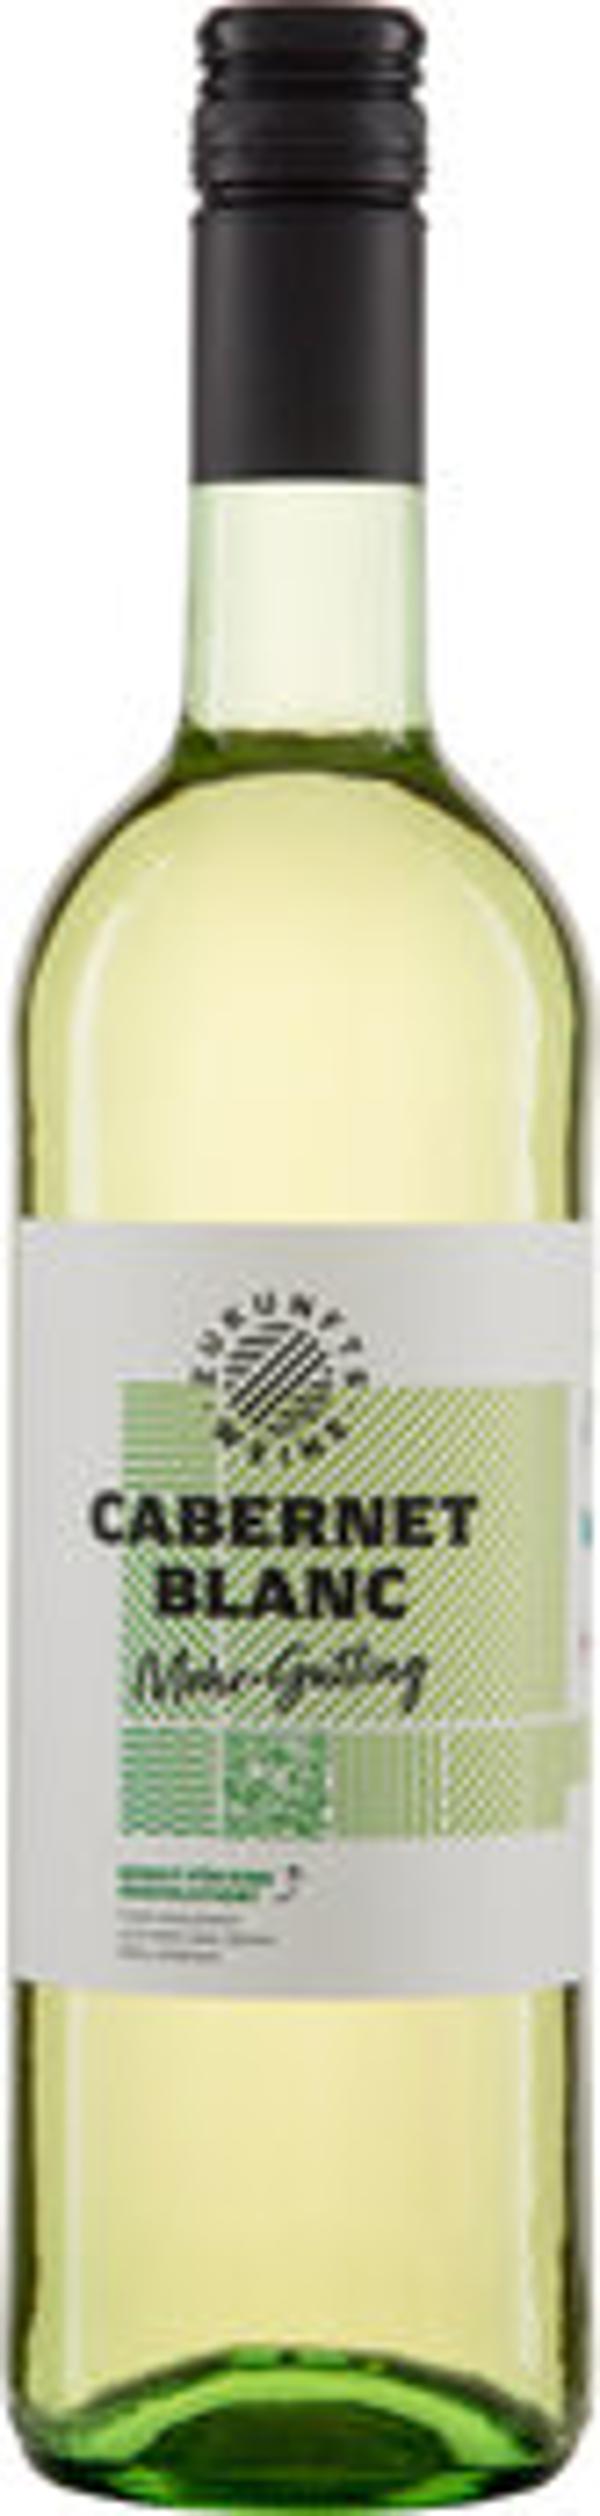 Produktfoto zu Cabernet Blanc  Zukunftswein